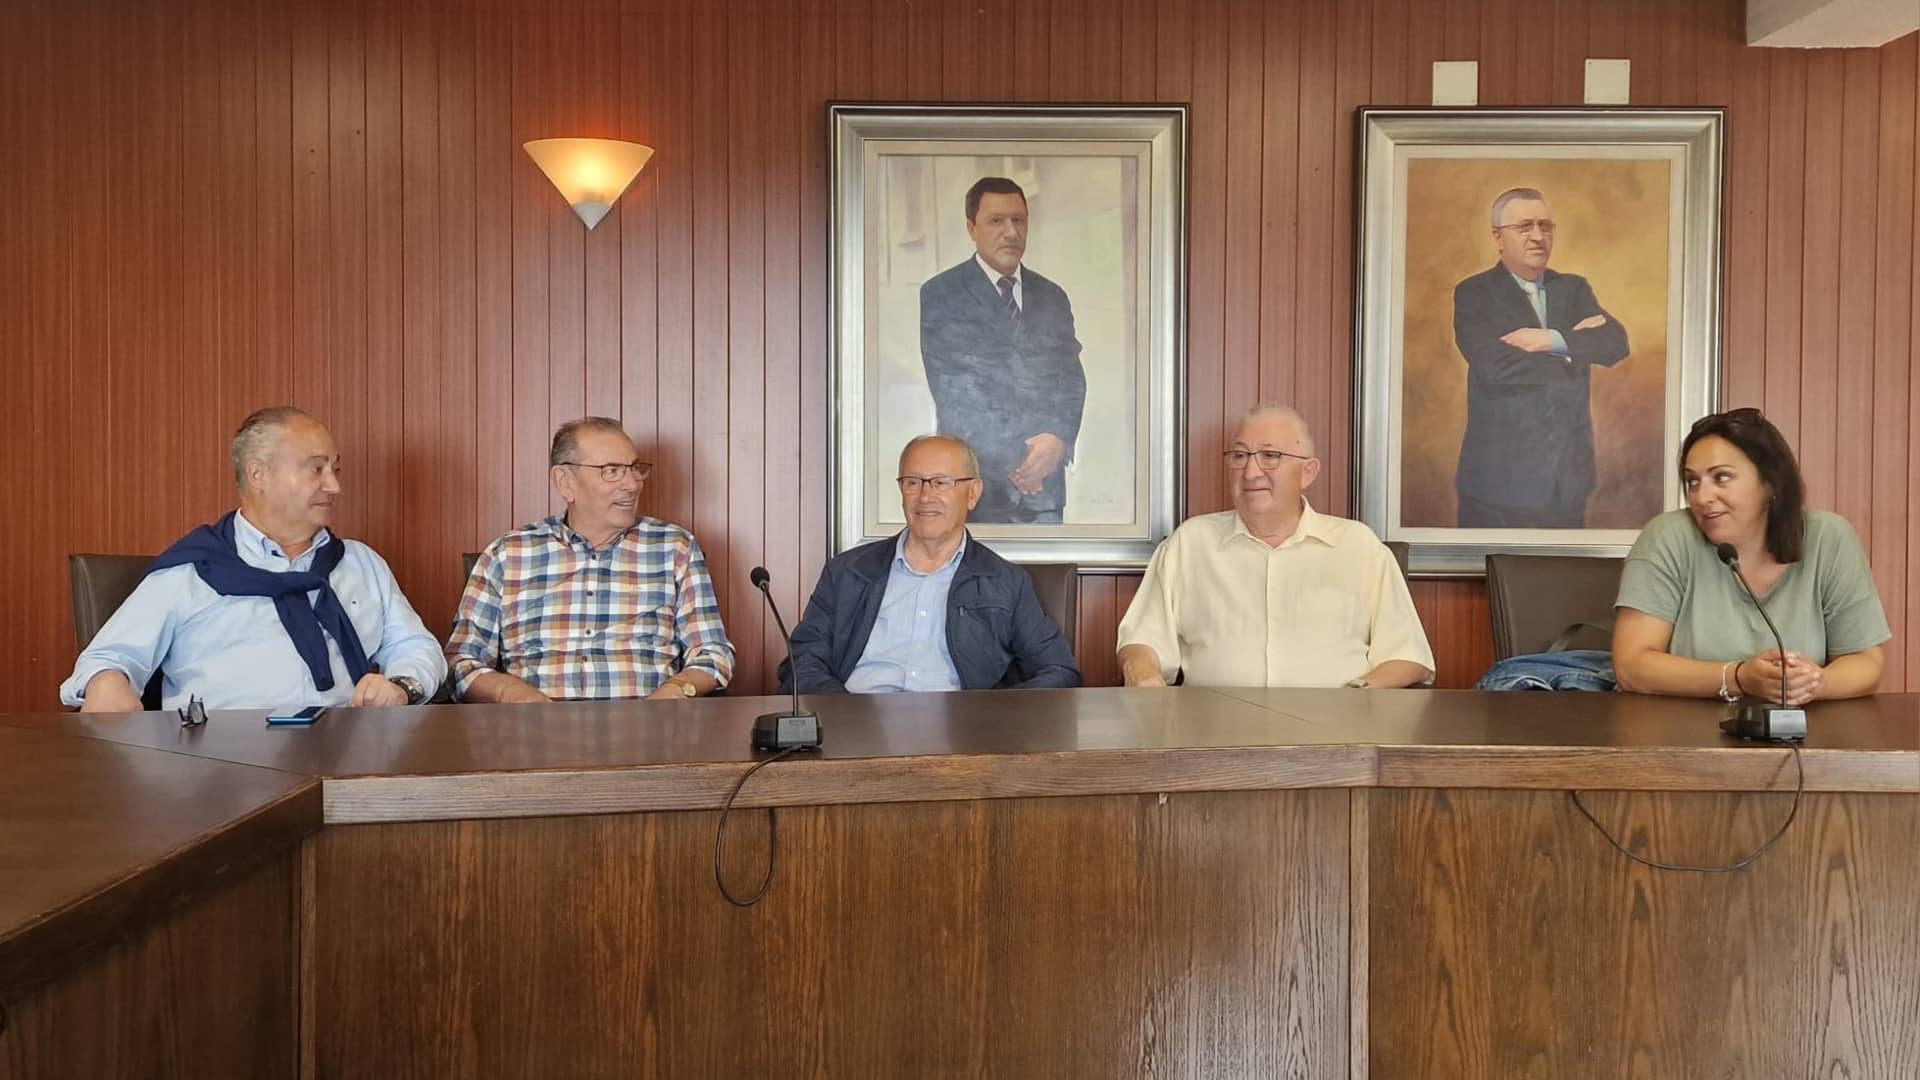 Los cinco alcaldes de Cee en democracia: Manuel Lamela, Manuel Castro, Antonio Domínguez, Ramón Vigo y Zaira Rodríguez | CONCELLO DE CEE